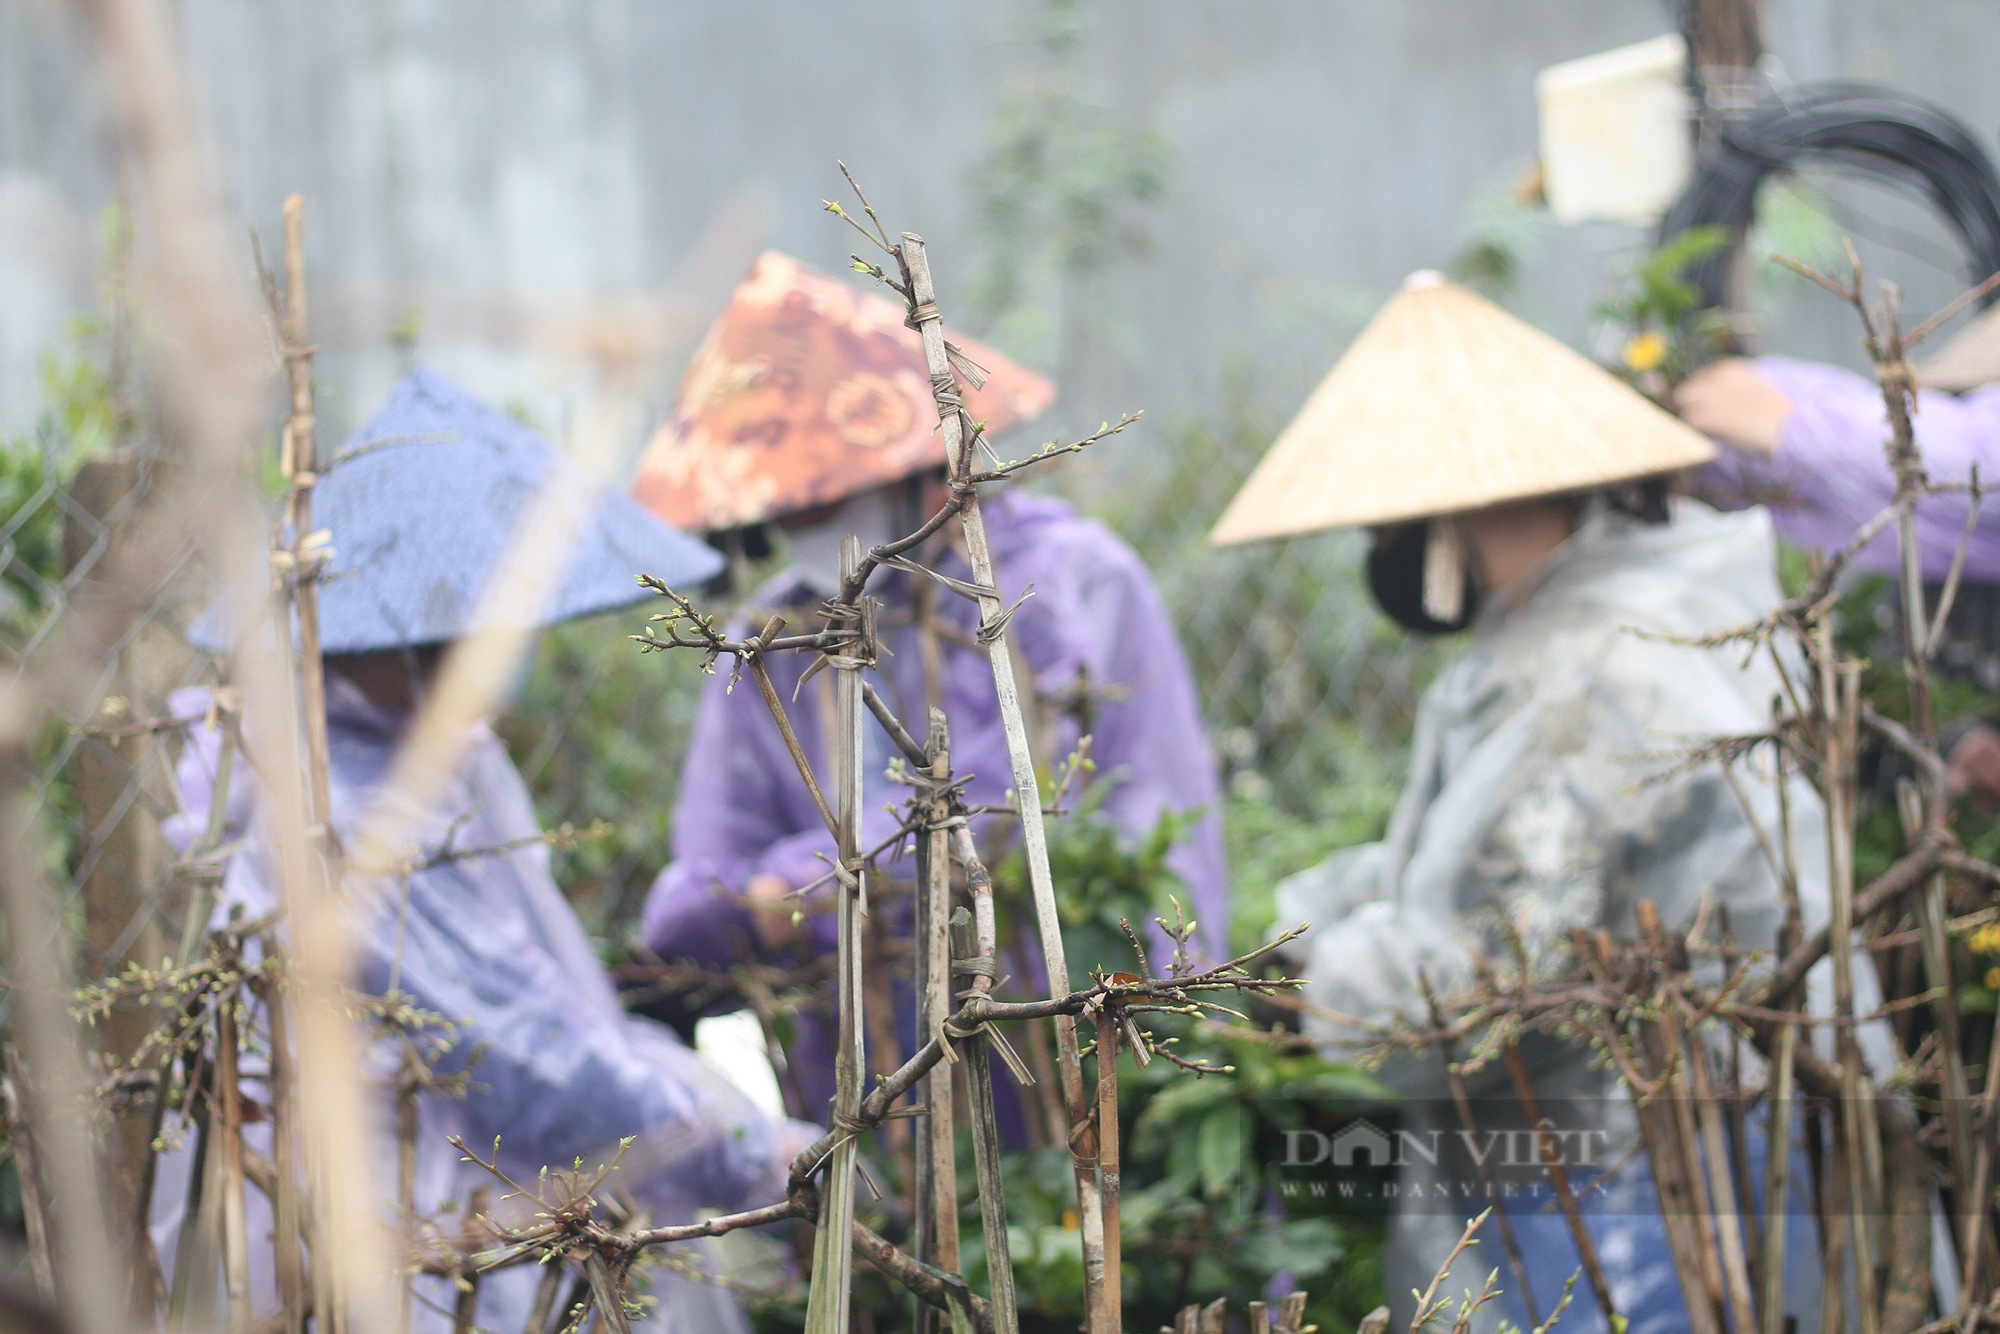 Nông dân An Nhơn "Thủ phủ" trồng mai vàng miền Trung ở Bình Định xuống lá mai kịp bán dịp Tết- Ảnh 4.